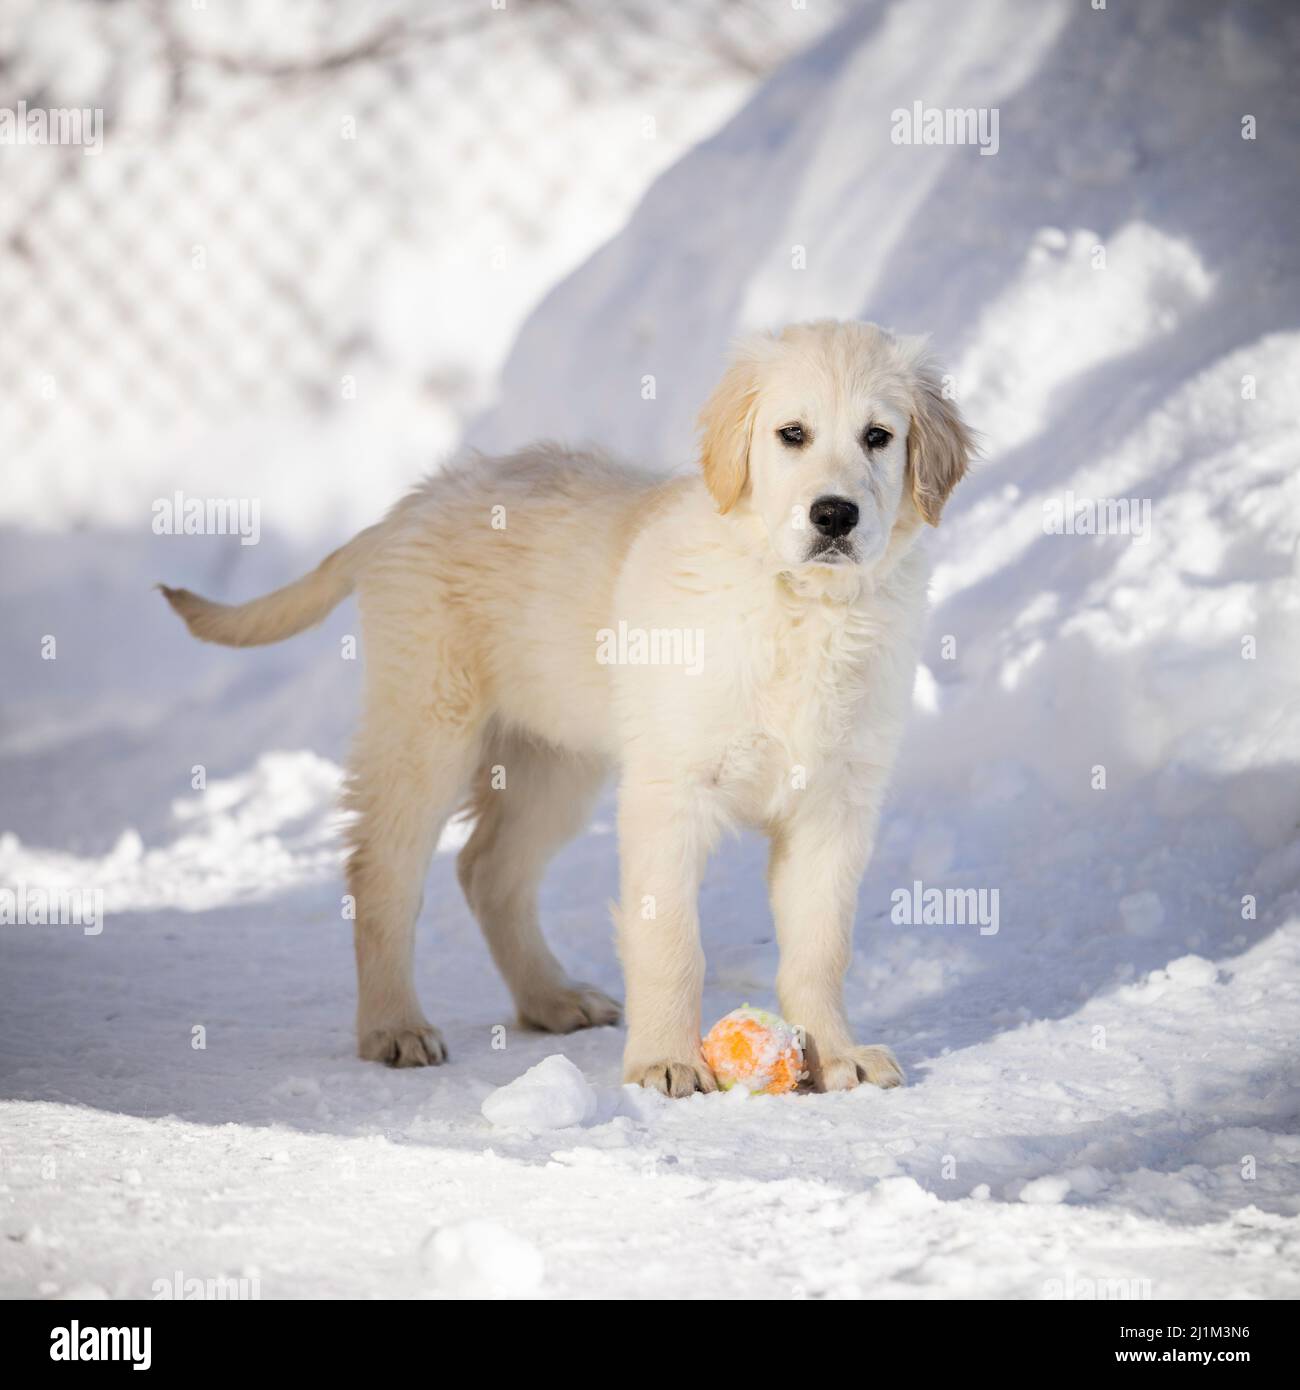 An English Cream Golden Retriever puppy in snow. Stock Photo